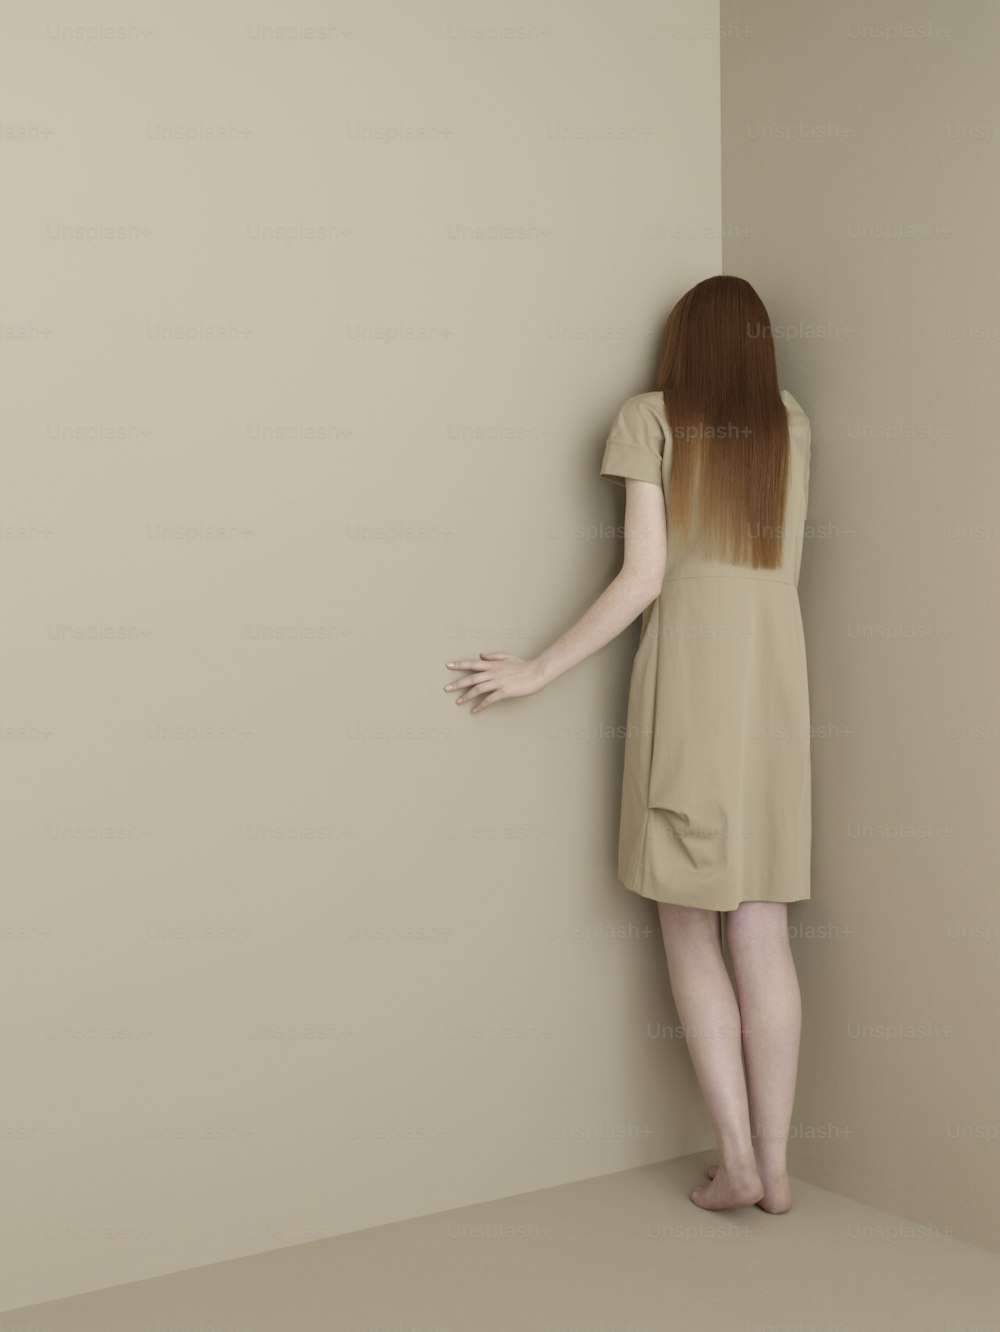 Una mujer con un vestido corto está apoyada contra una pared